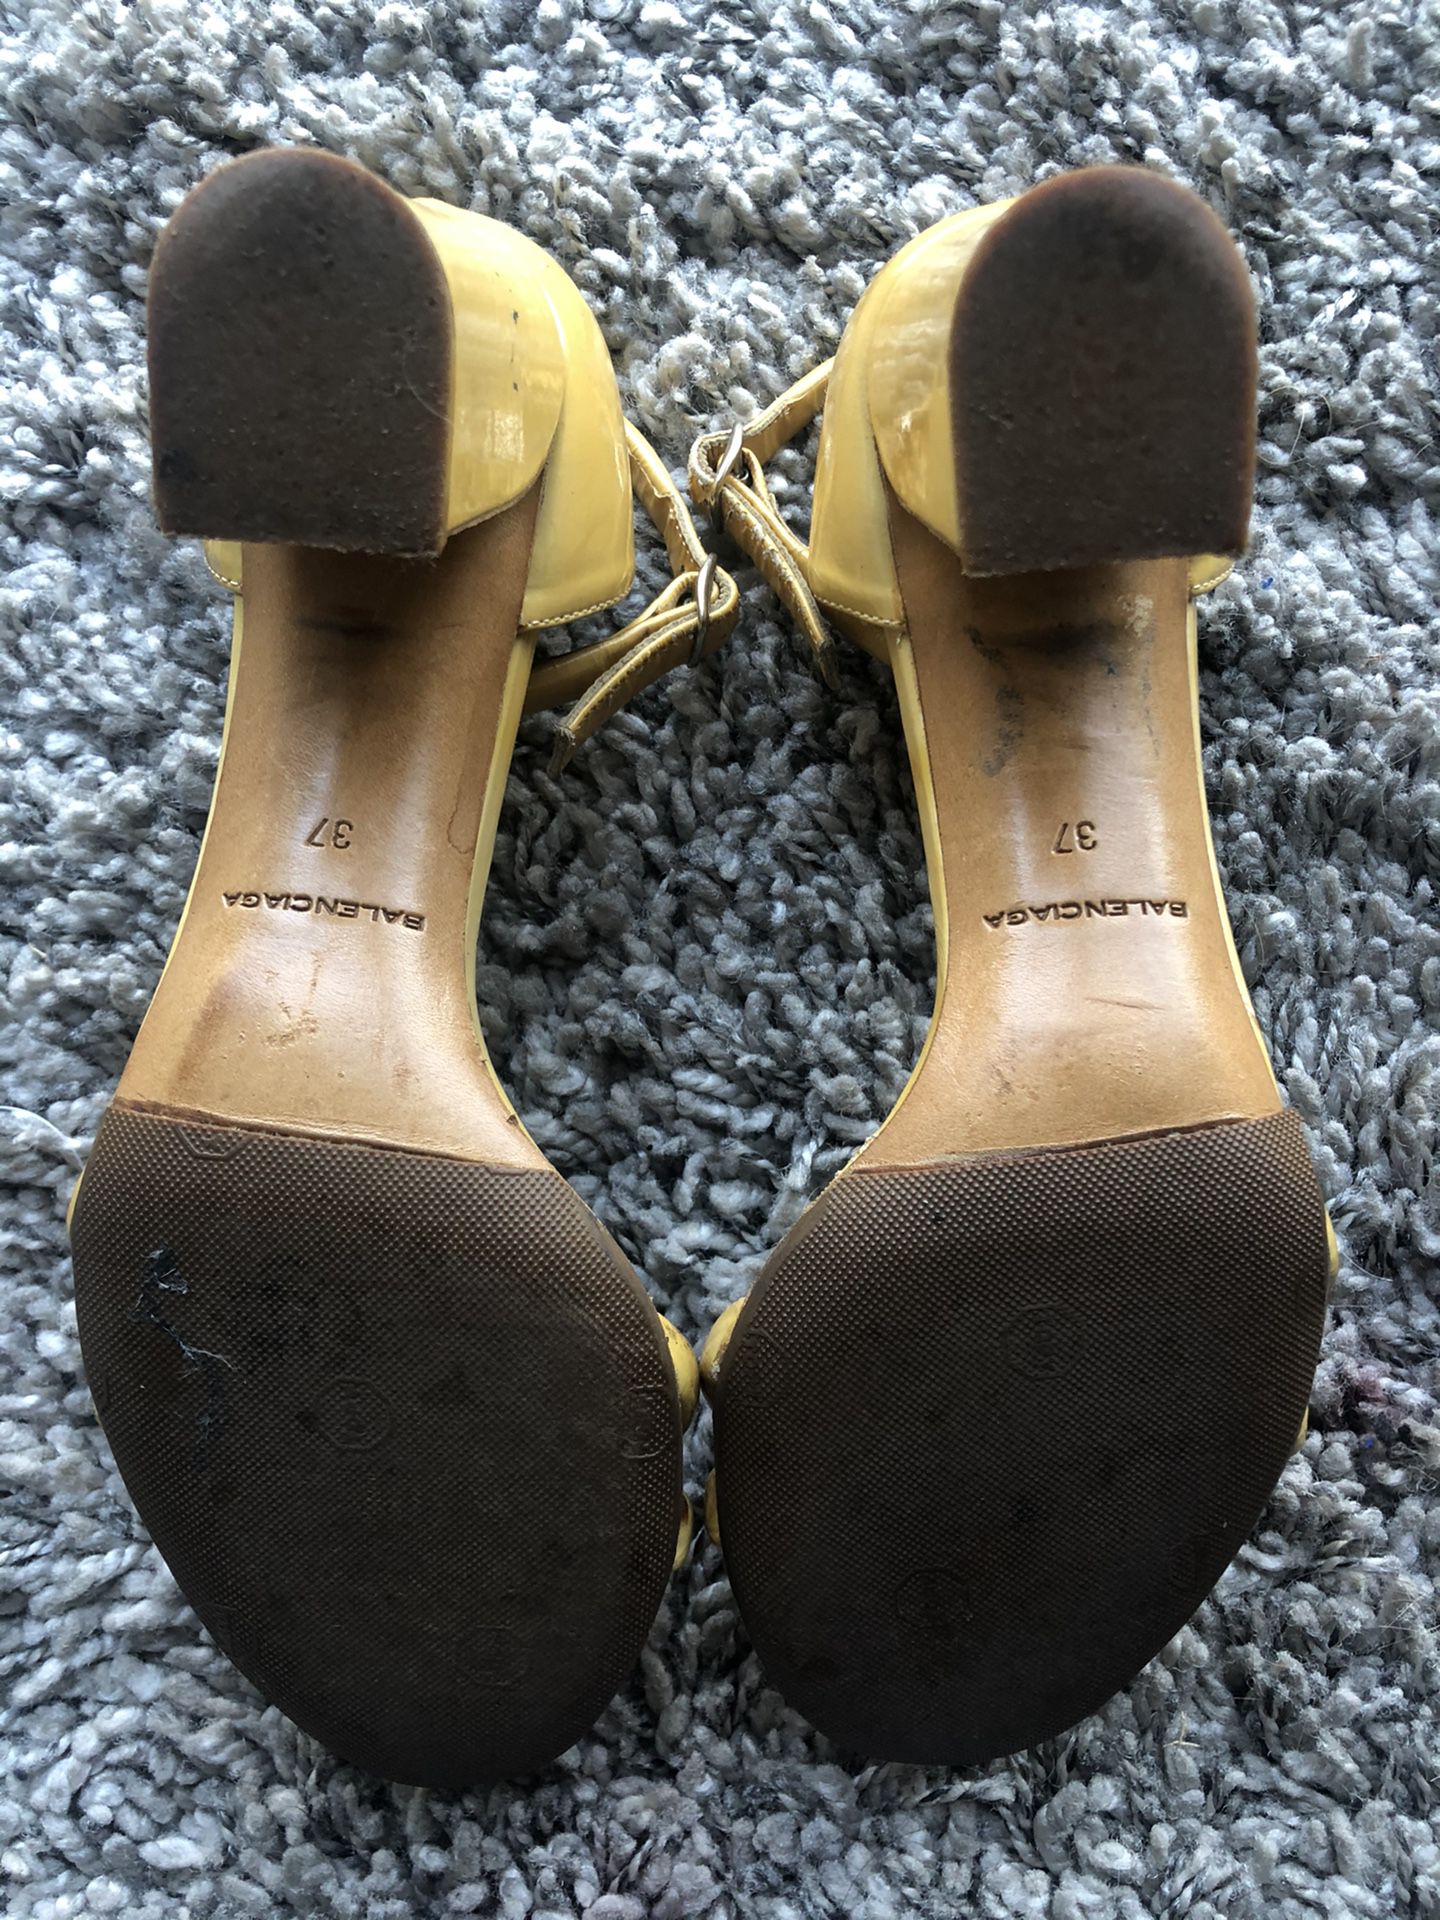 Vintage balenciaga heels